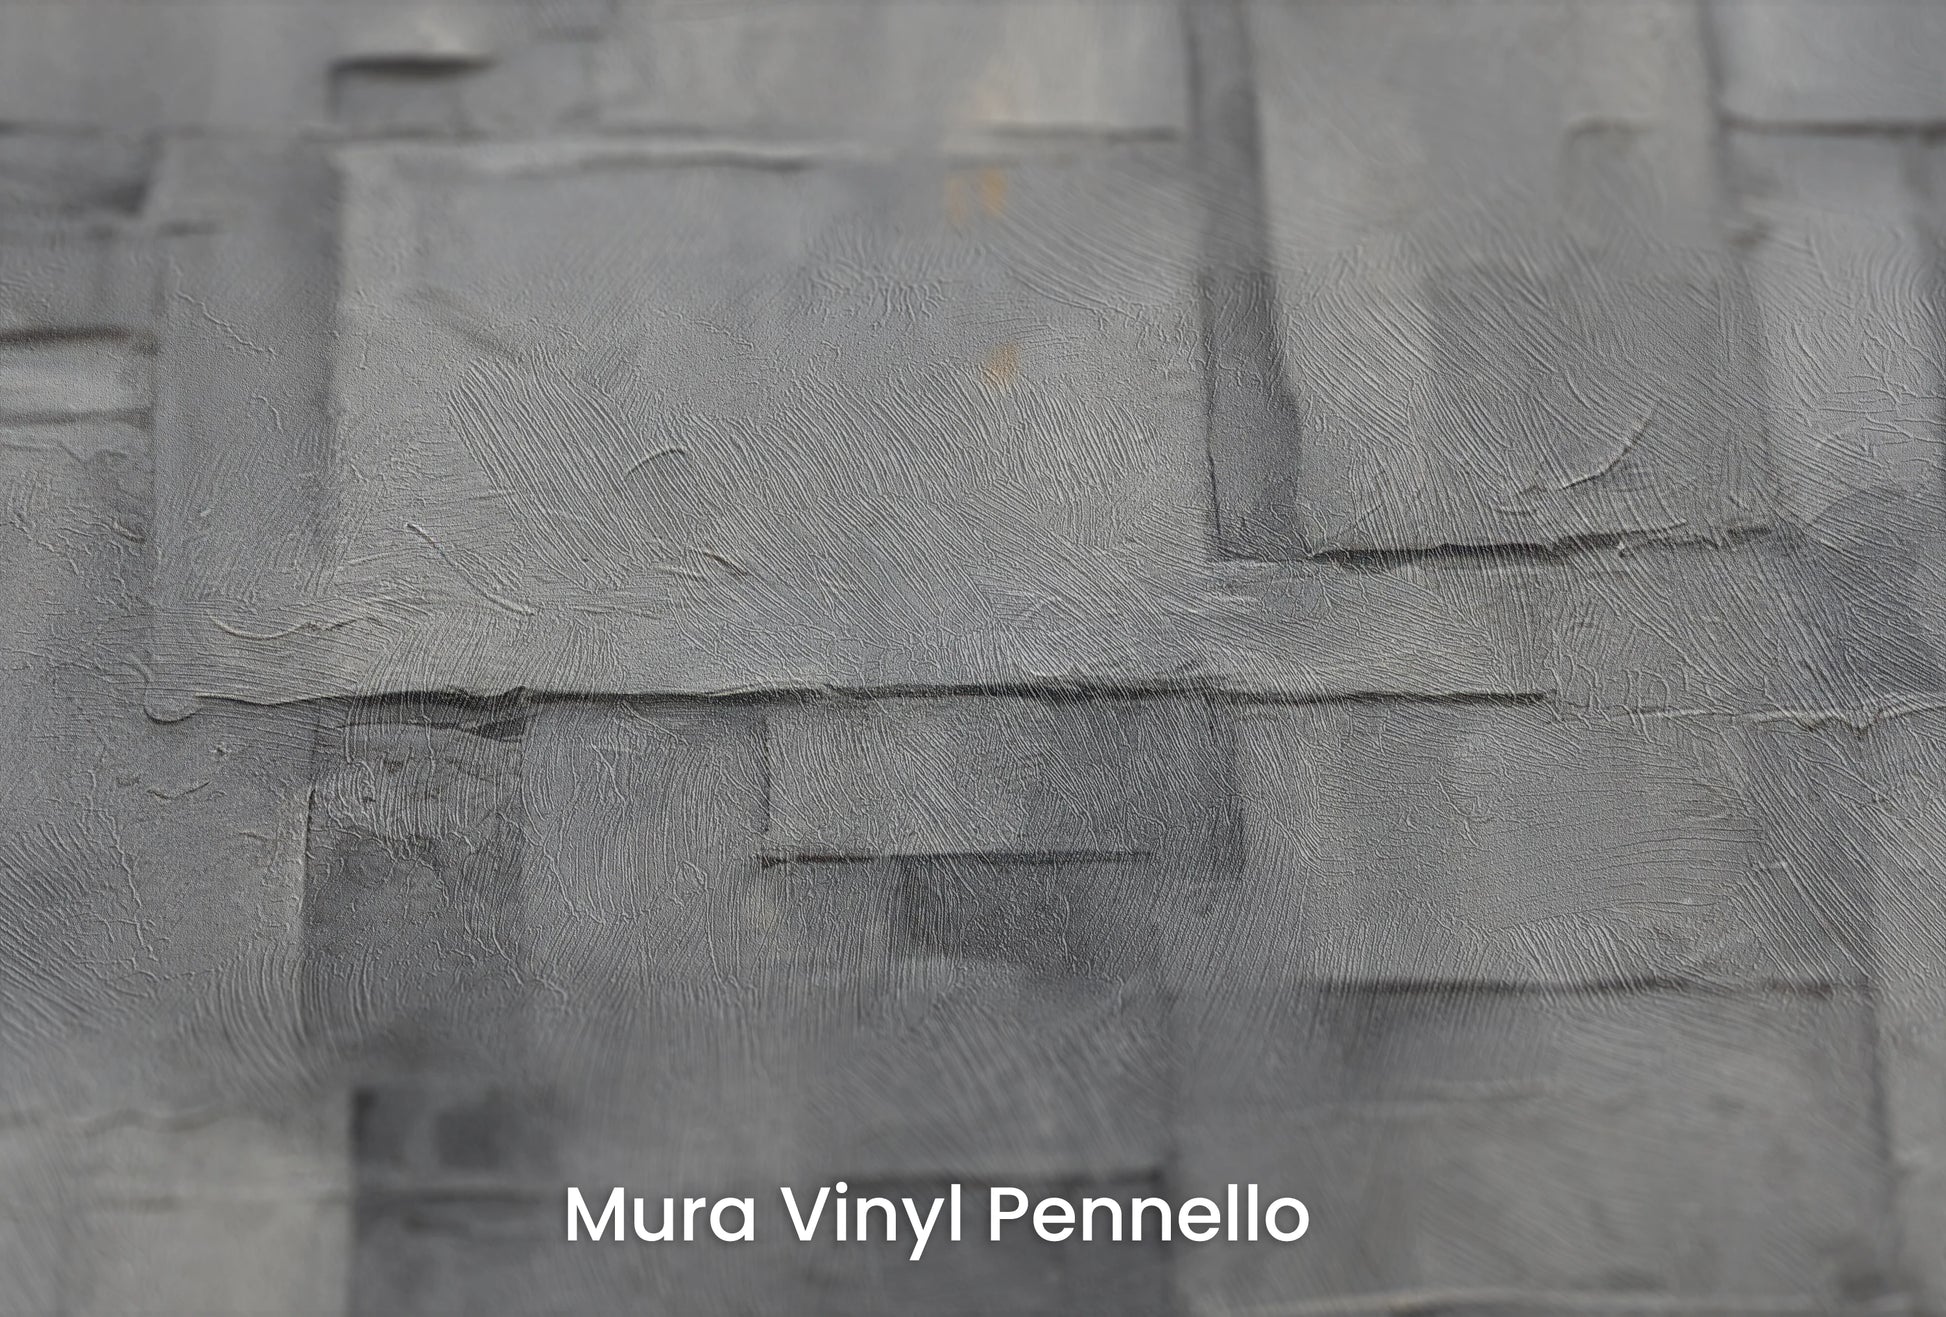 Zbliżenie na artystyczną fototapetę o nazwie Urban Cubism na podłożu Mura Vinyl Pennello - faktura pociągnięć pędzla malarskiego.